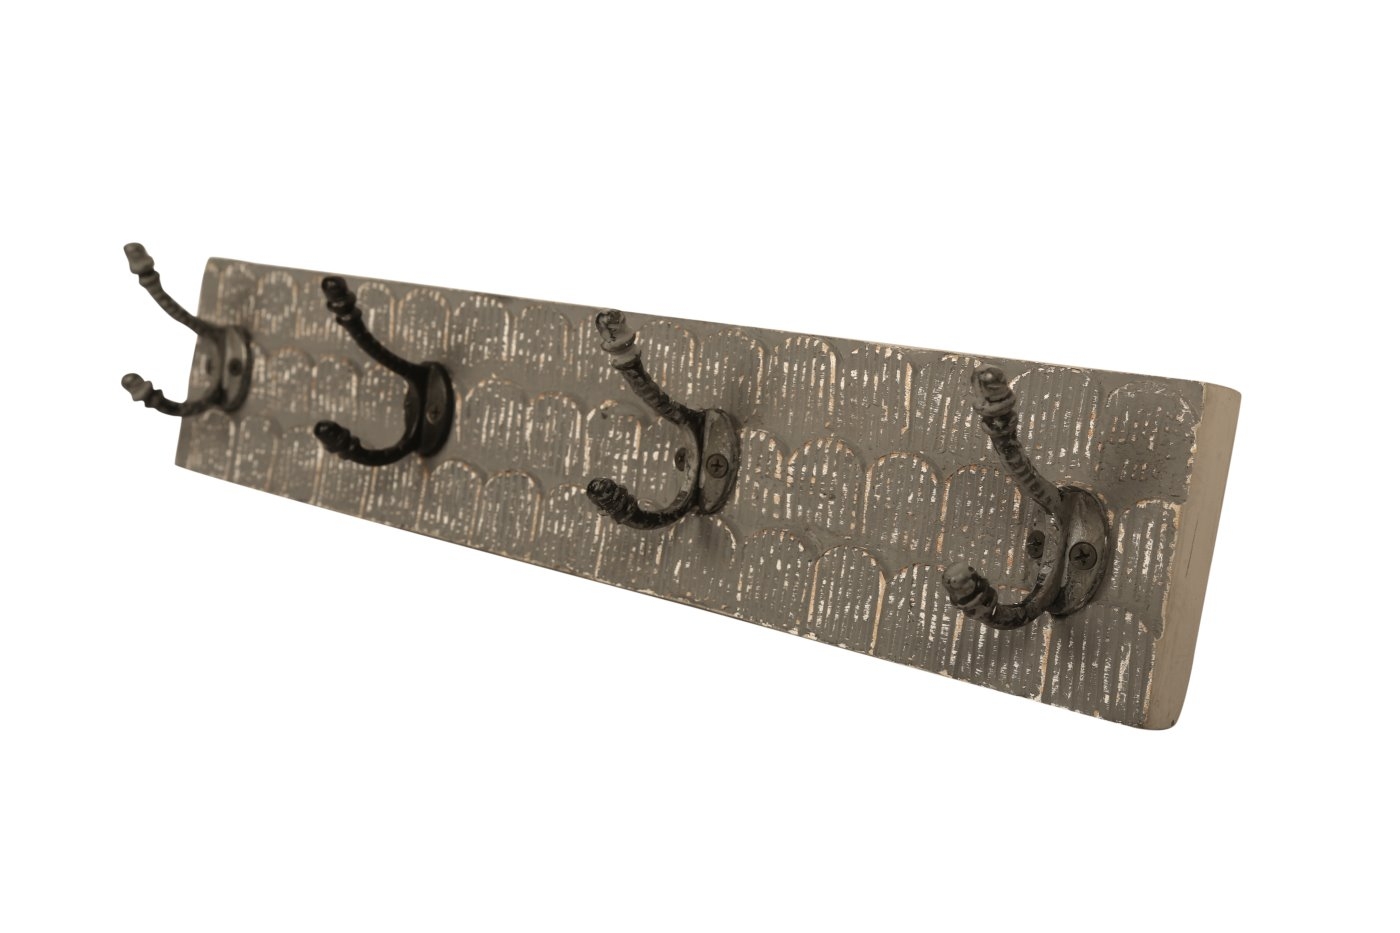 bhp Wandgarderobe aus Holz braungrau gemustert mit 4 Metallhaken-Front geschnitzt